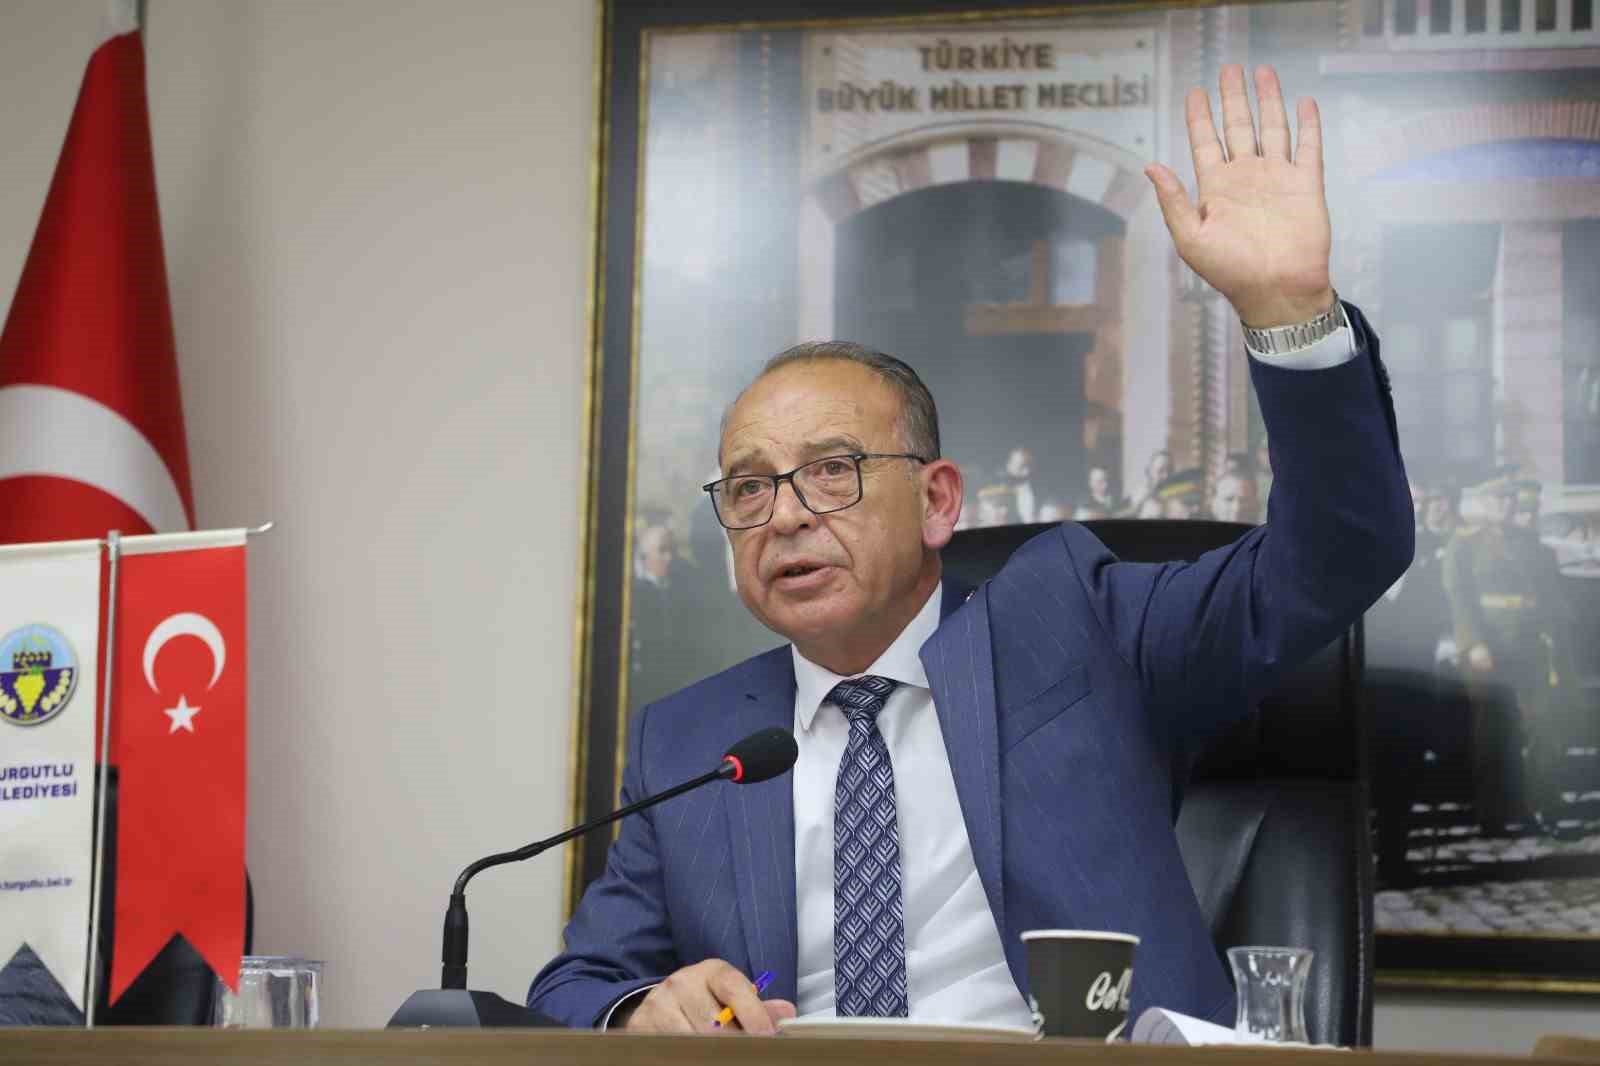 Turgutlu’da yeni dönemin ilk meclisi toplandı